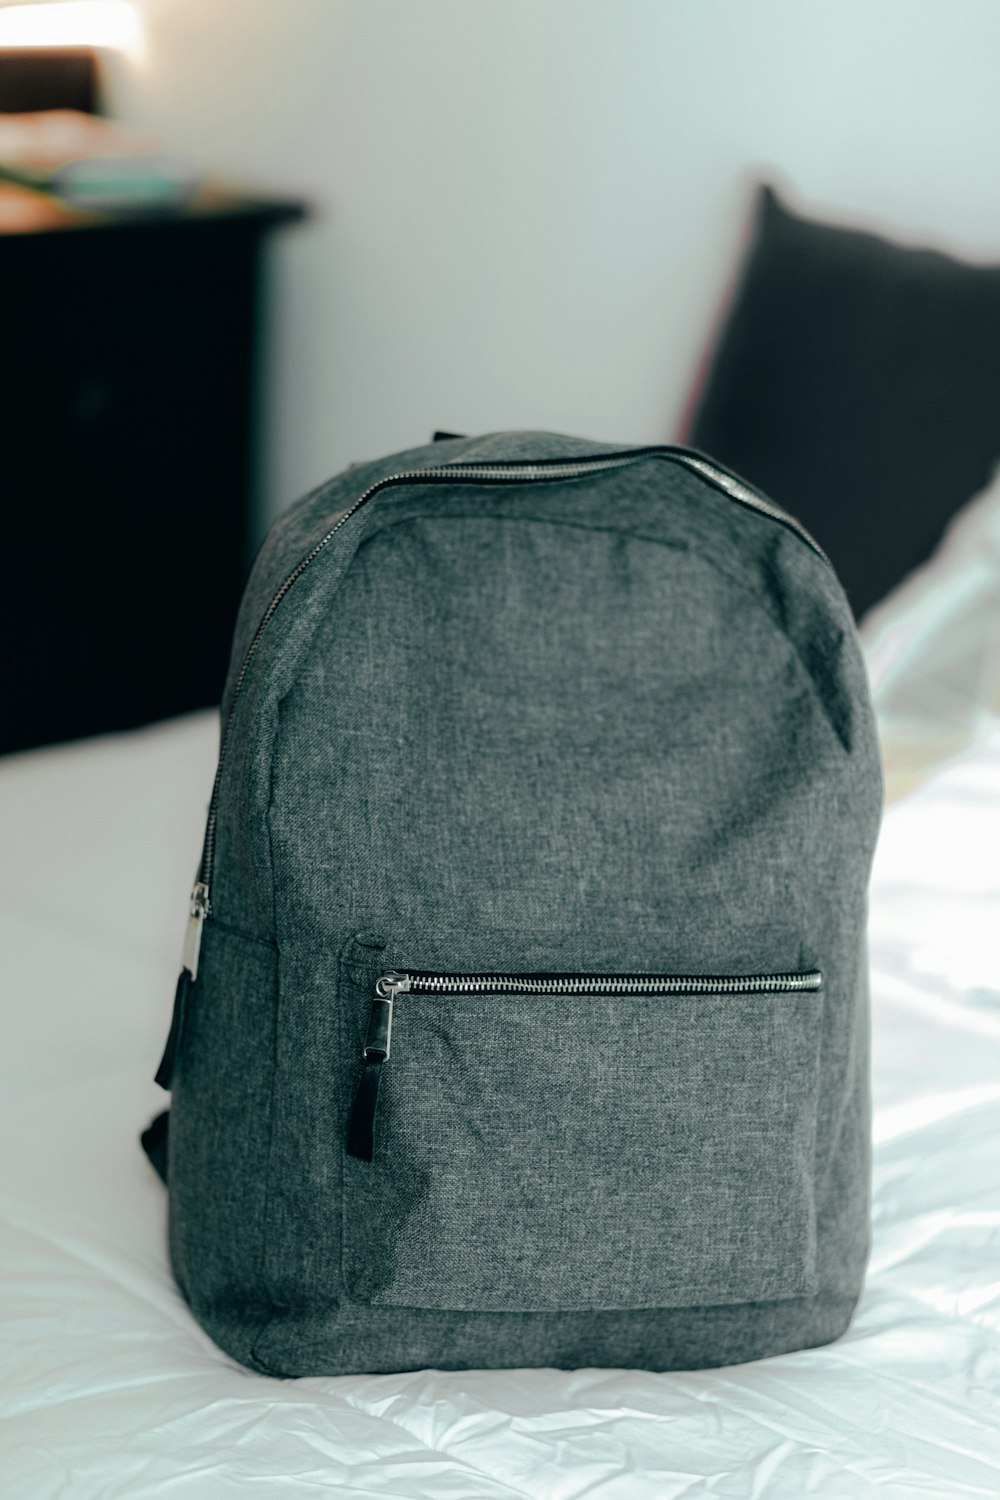 black backpack on white textile